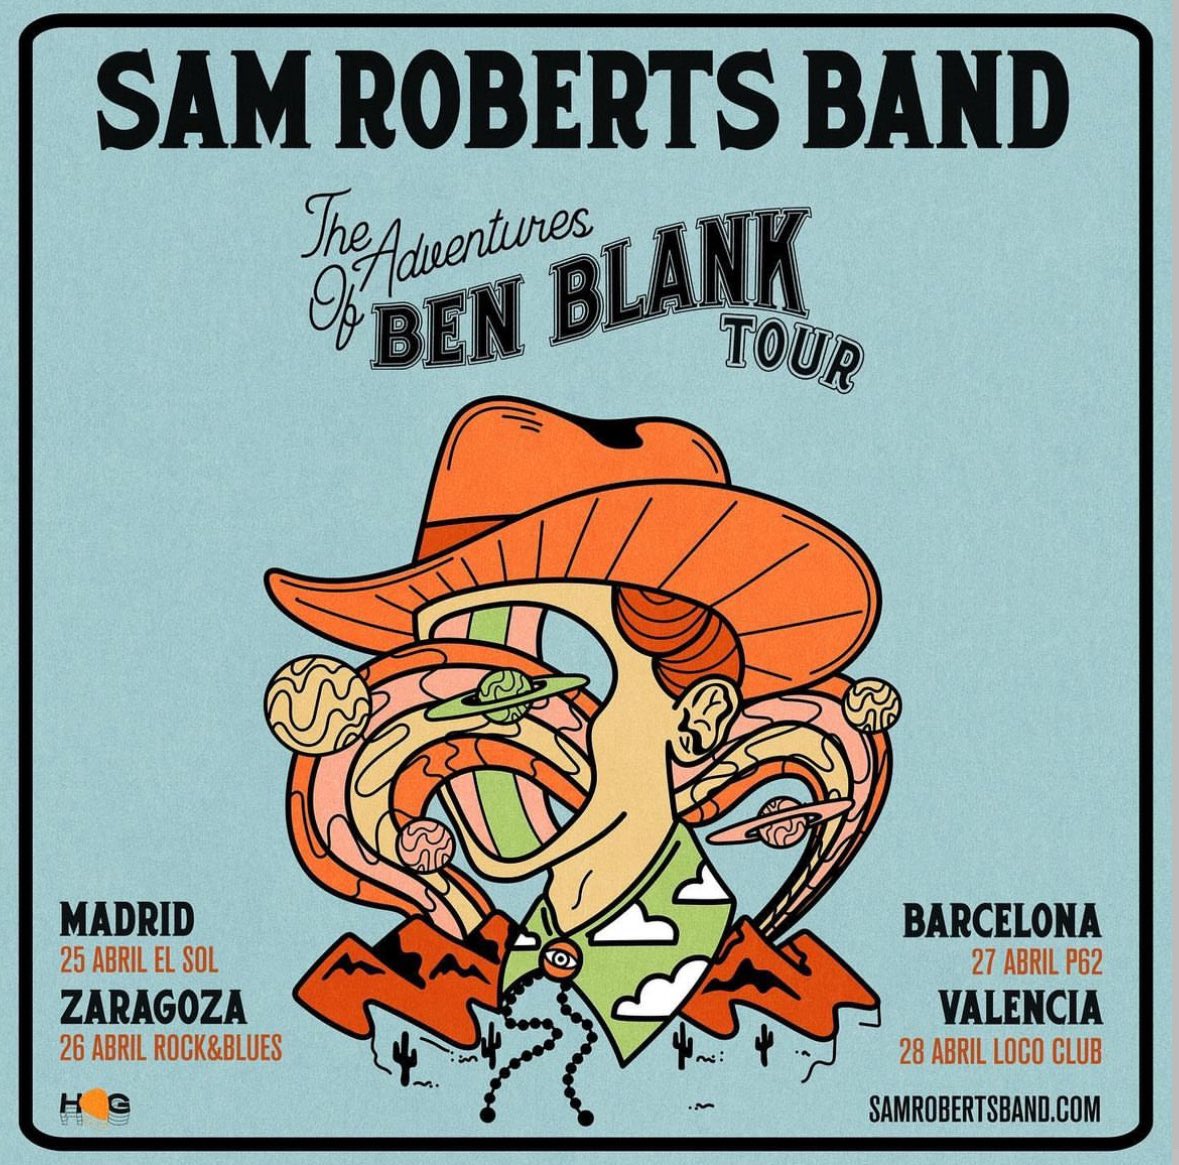 El 25 de abril @samrobertsband estará en directo en la @SalaElSol de Madrid, @produtriz info: conciertospormadrid.com/conciertos-des…